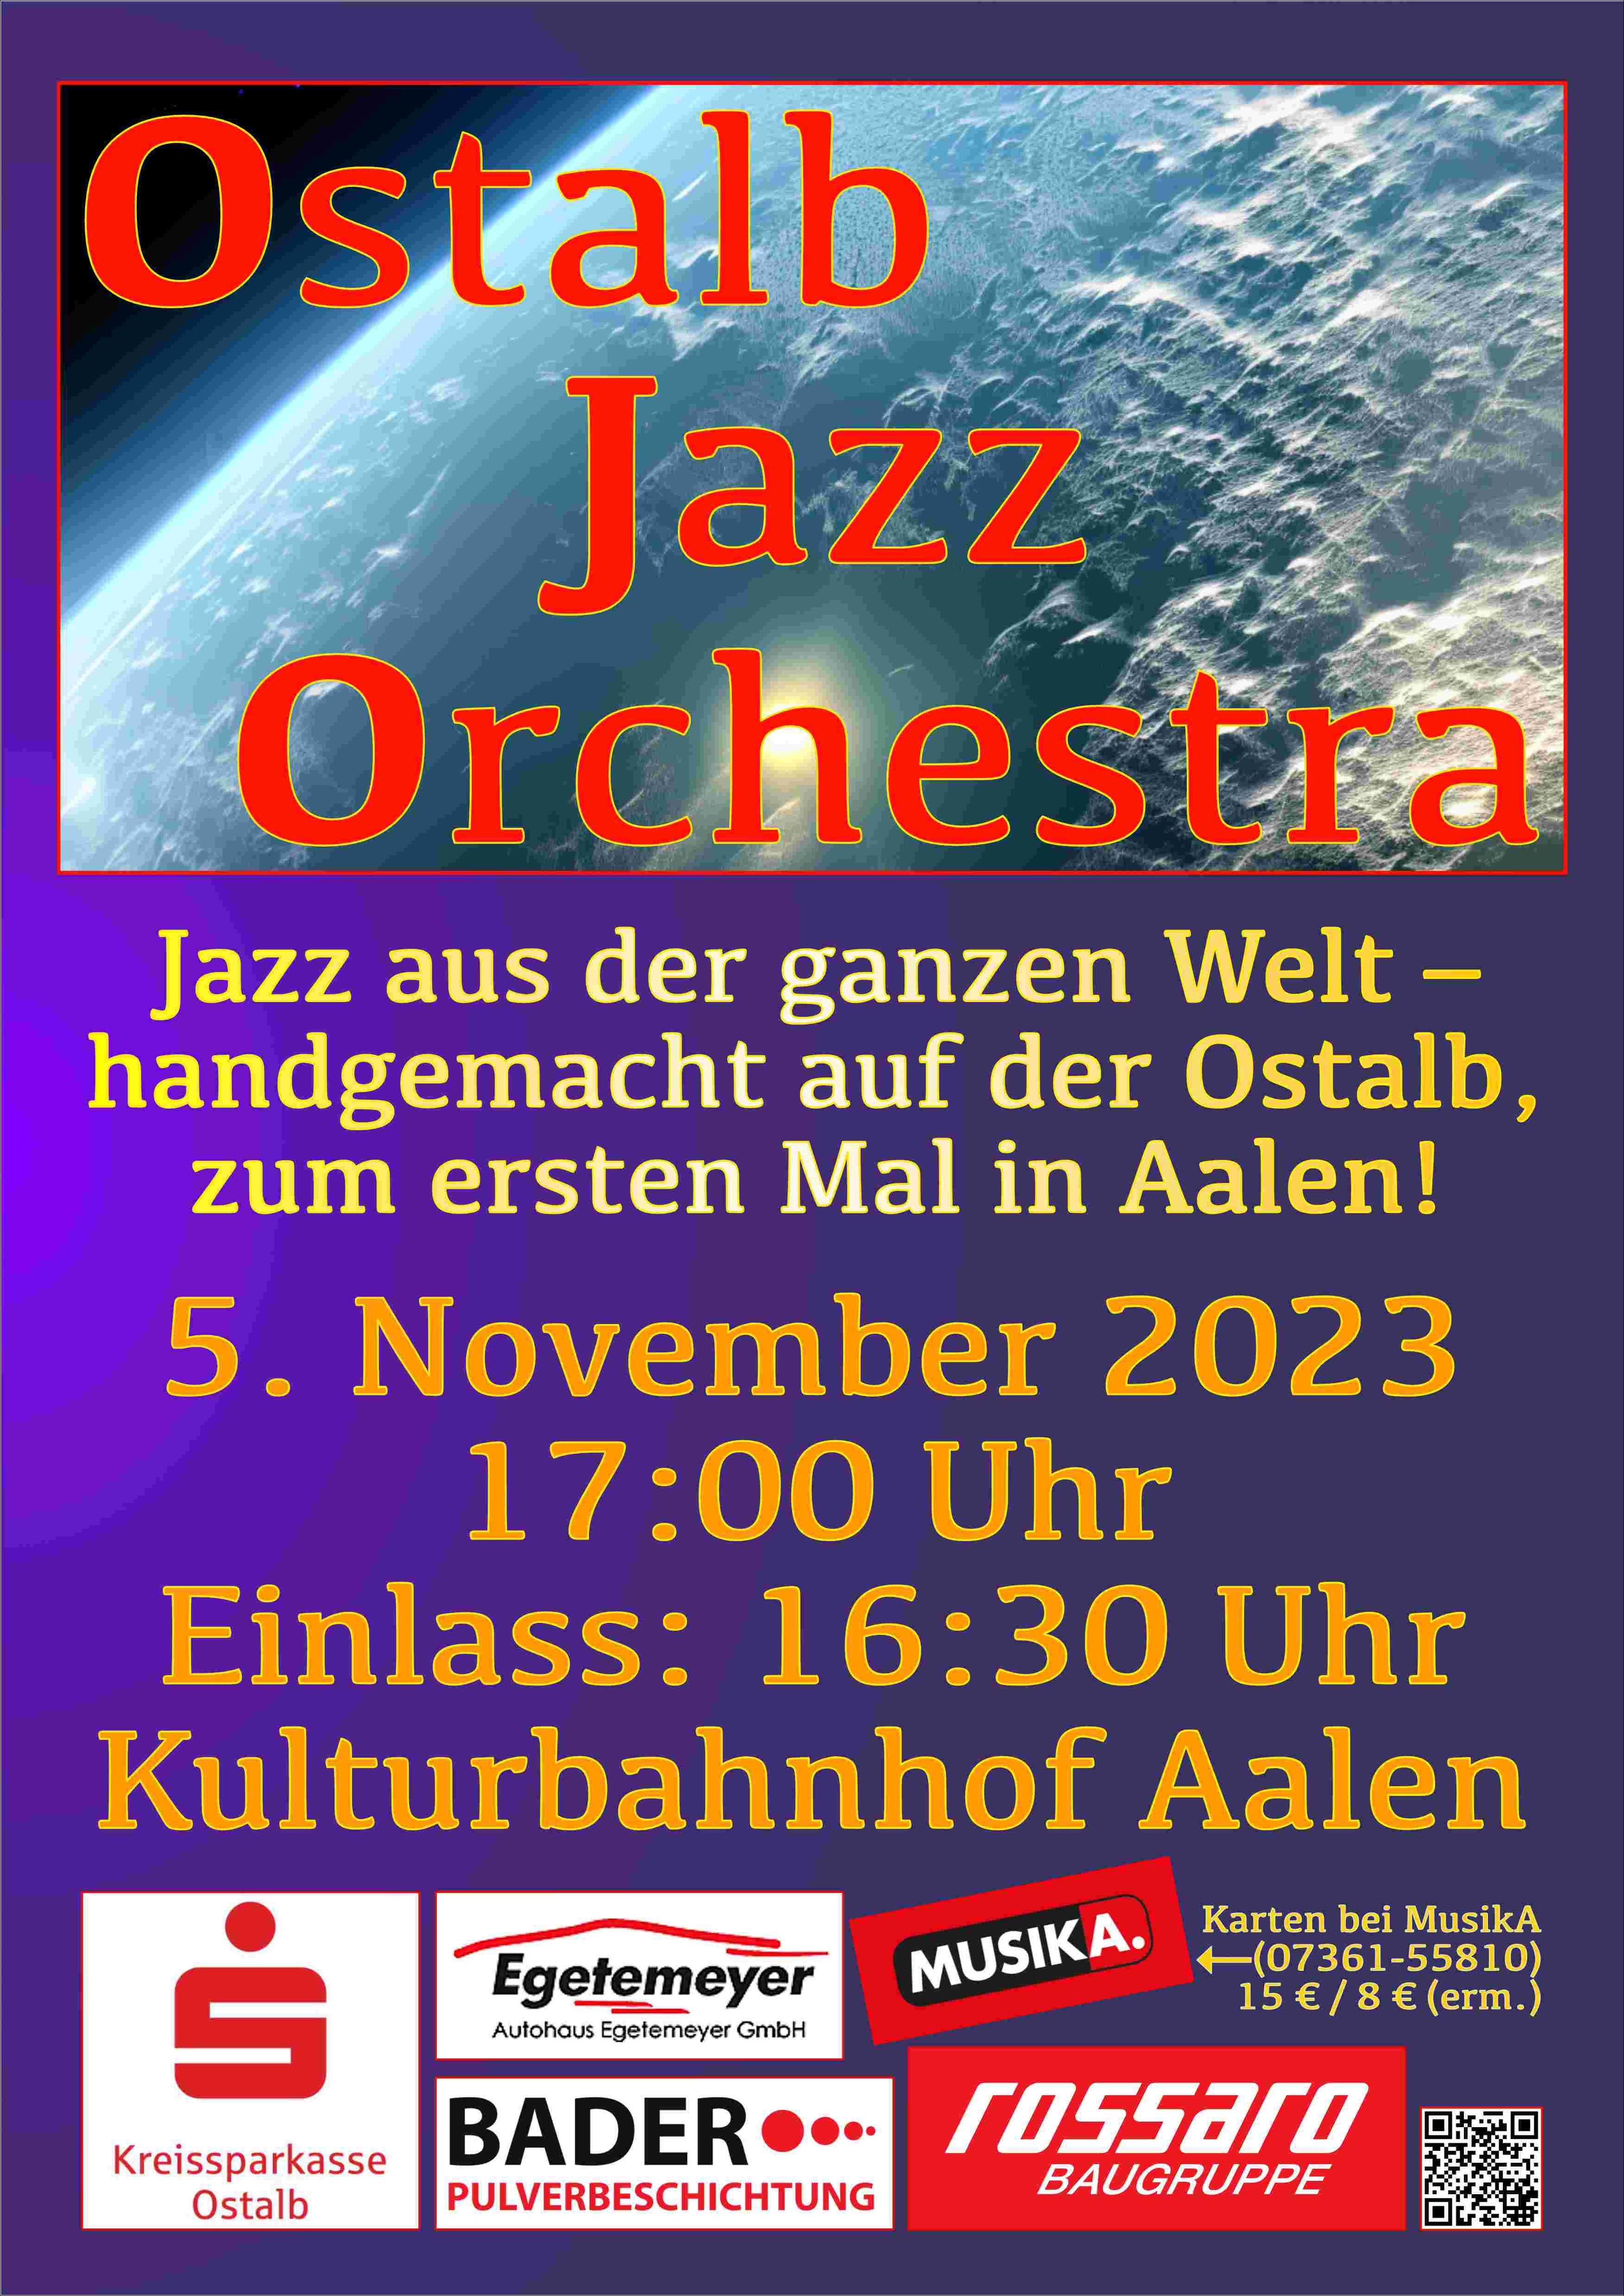 Plakat für unser Konzert am 5. November 2023 im Kulturbahnhof Aalen